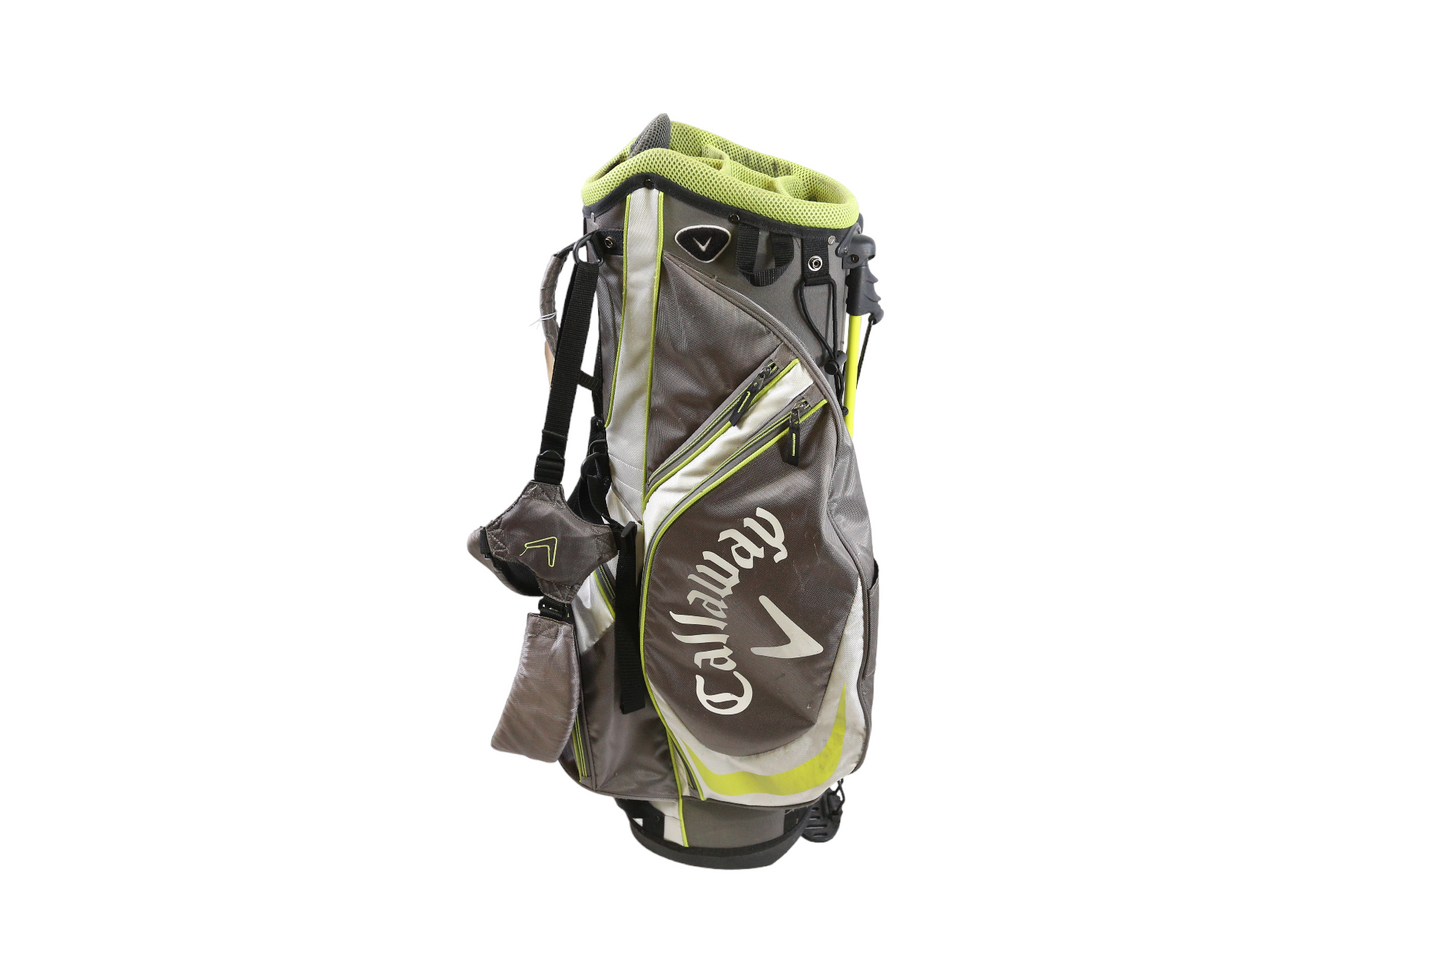 Callaway Stand Bag Grey/White/Lime 6 Divider 5 Pocket Shoulder Strap